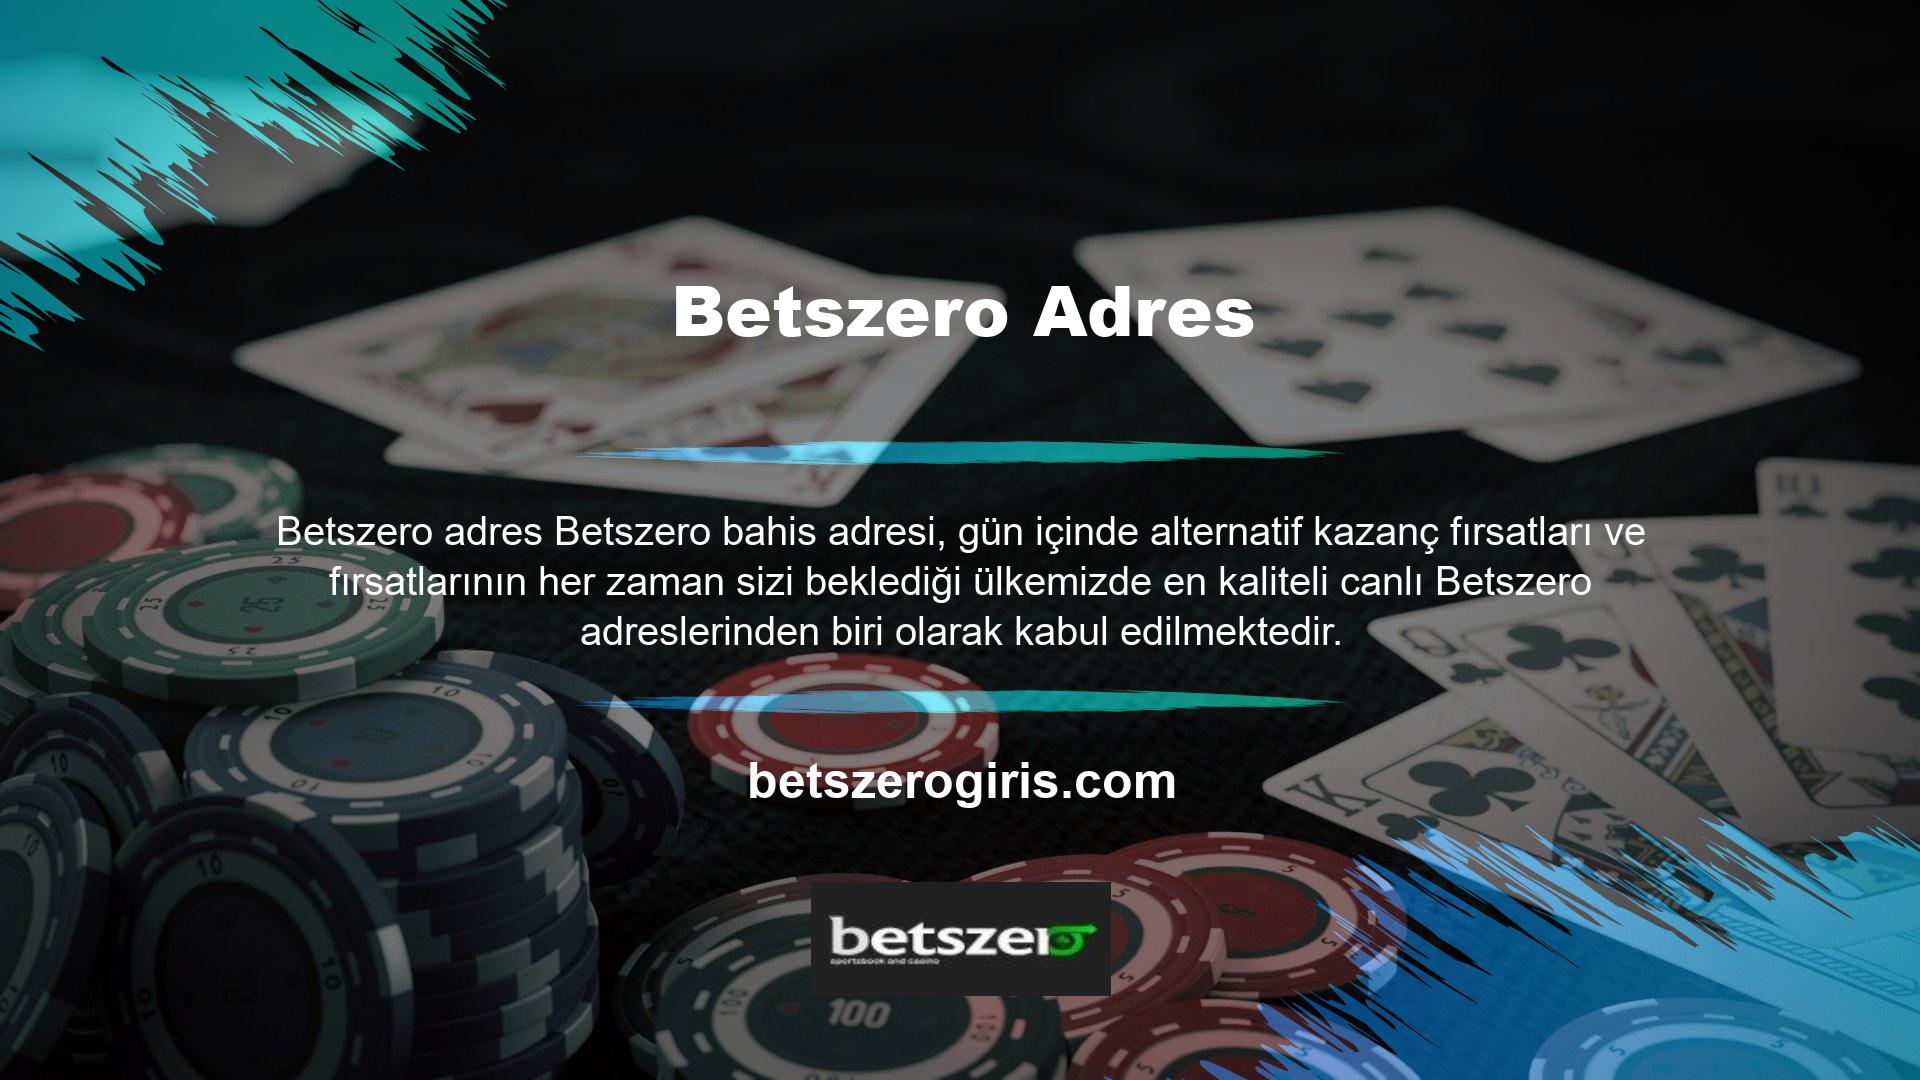 Betszero platformunda yapmanız gereken ilk şey, kullanıcılara benzersiz kalite, güvenlik ve eğlenceli anlar sunmak için tasarlanmış yüzlerce farklı bahis ve oyunun yer aldığı platform olan Betszero üye olmaktır